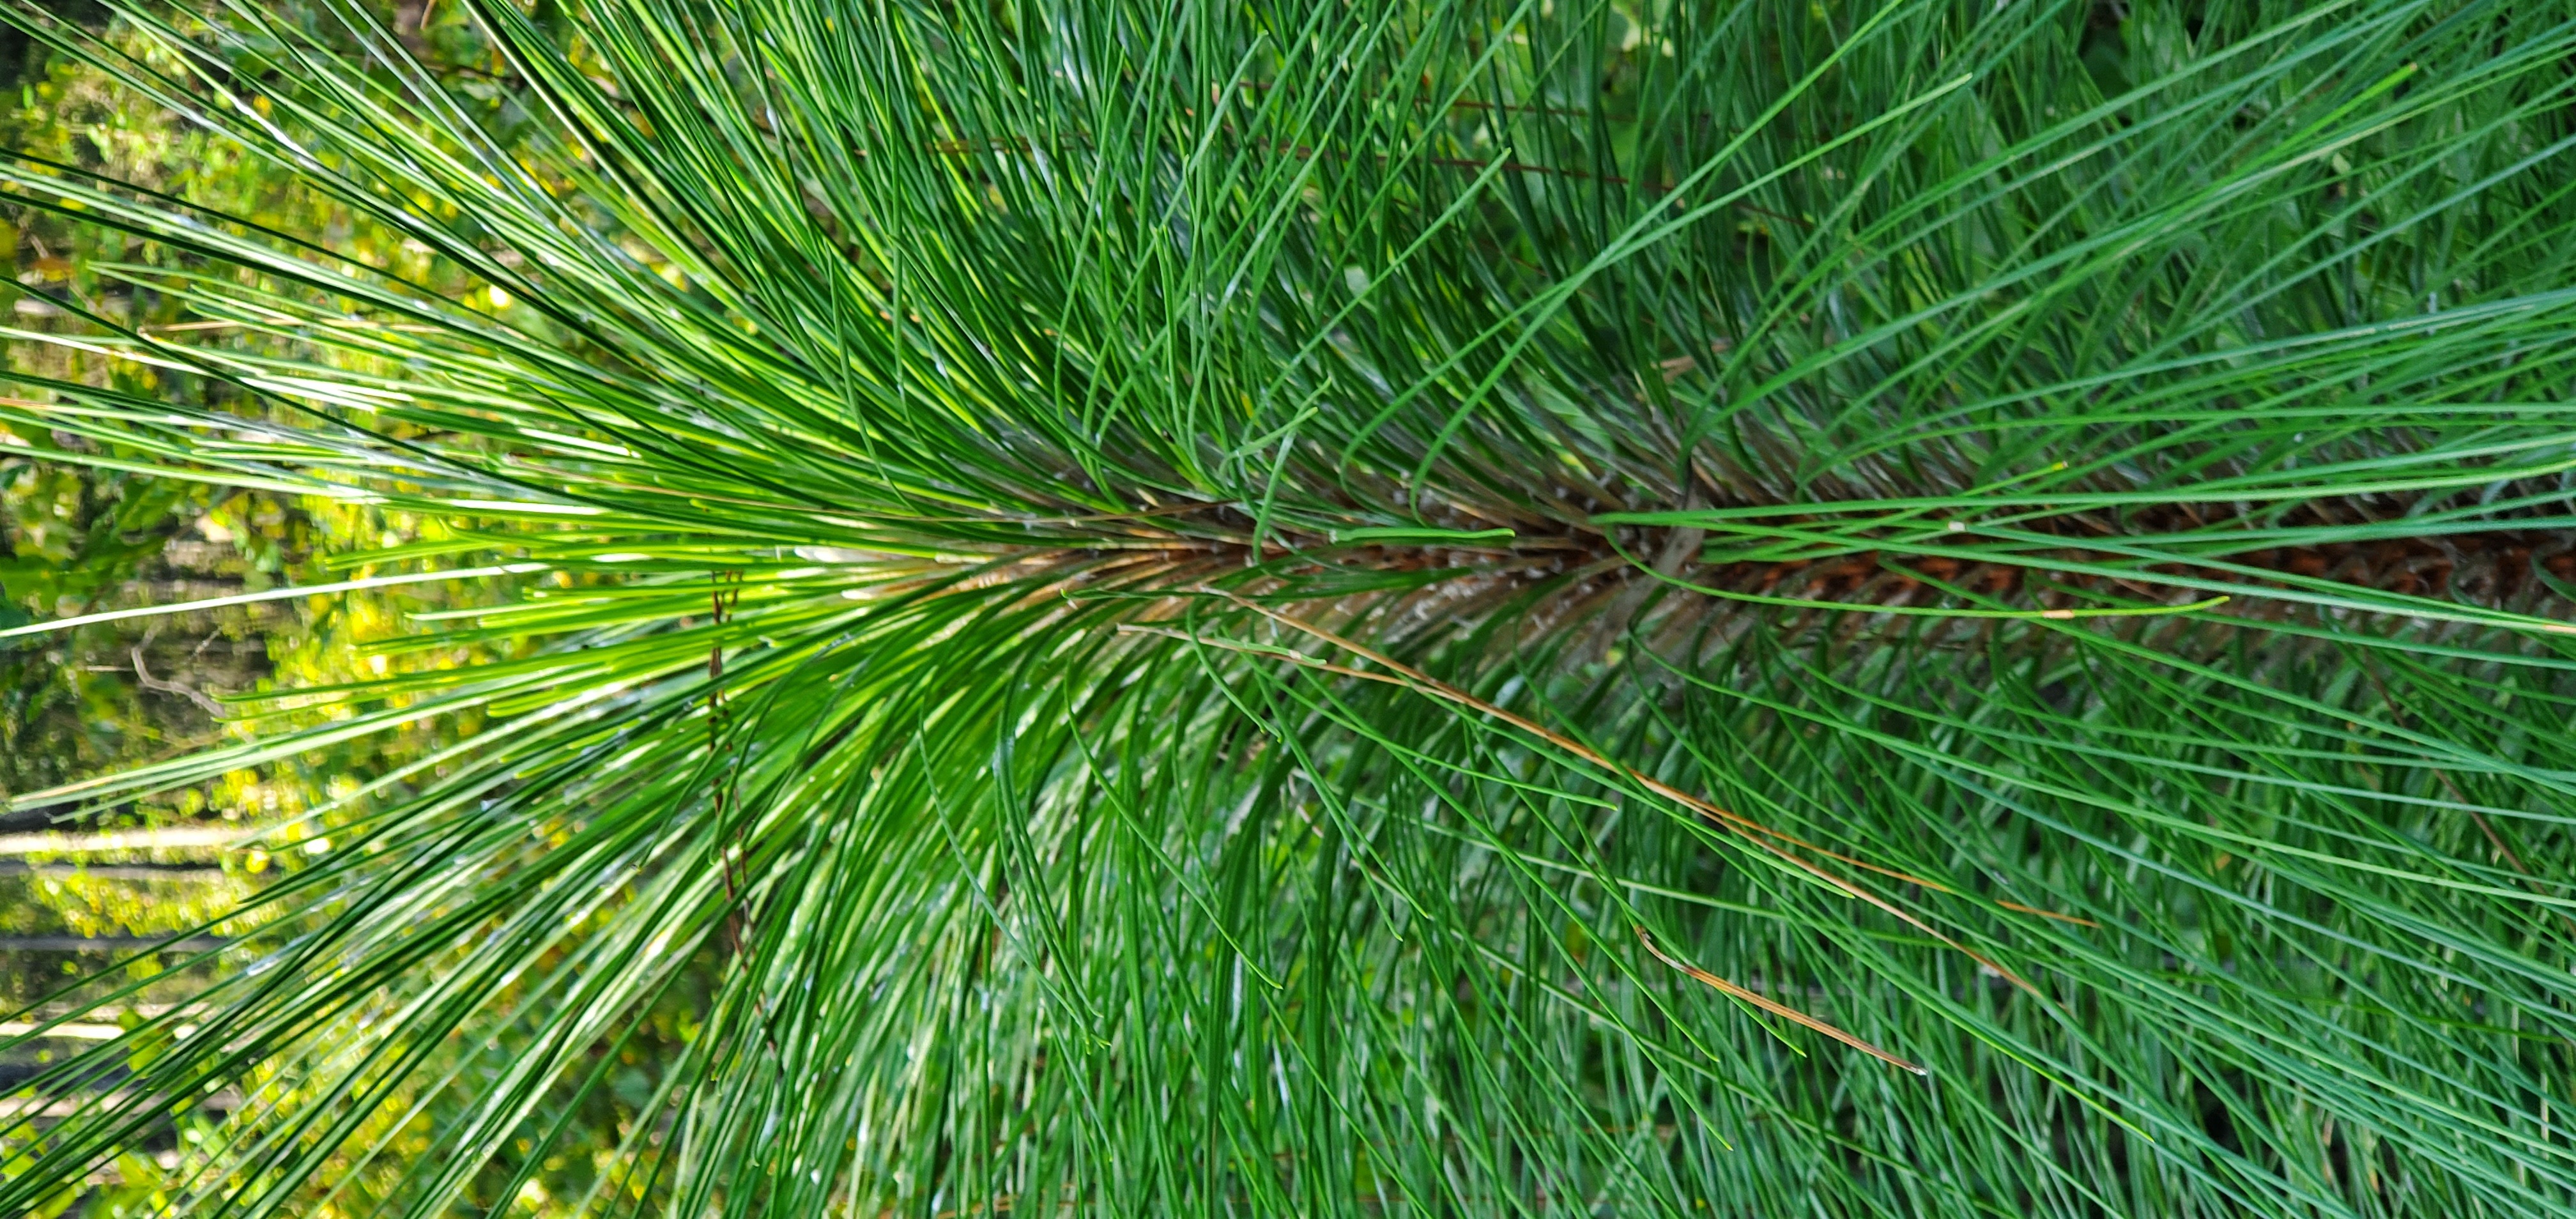 Longleaf pine, Pinus palustris